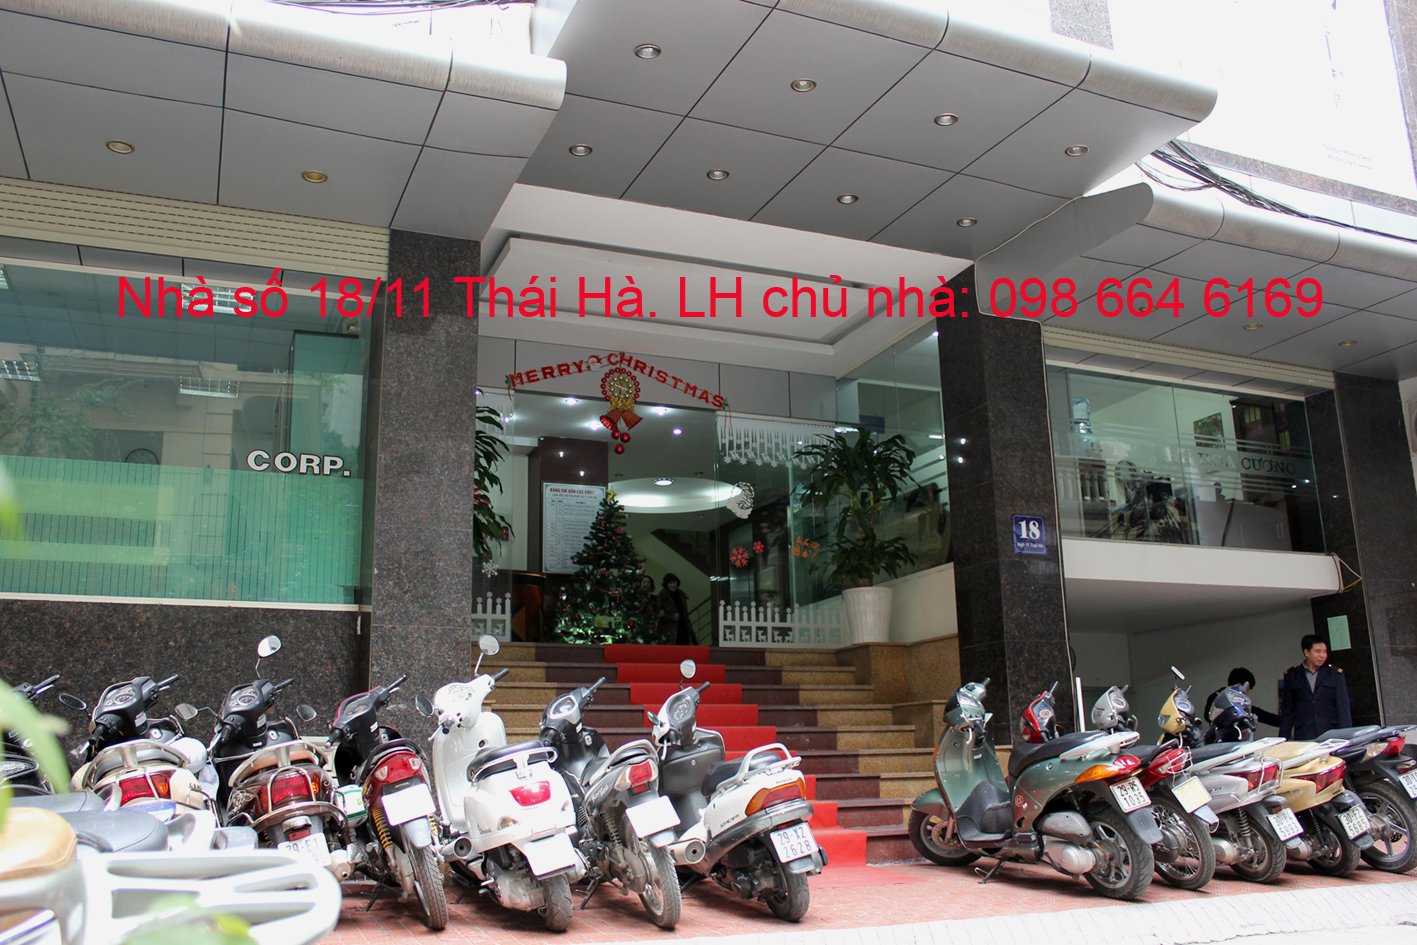 Chủ nhà cho thuê 45m2 văn phòng tại phố Thái Hà Giá rẻ - Dịch vụ chuyên nghiệp